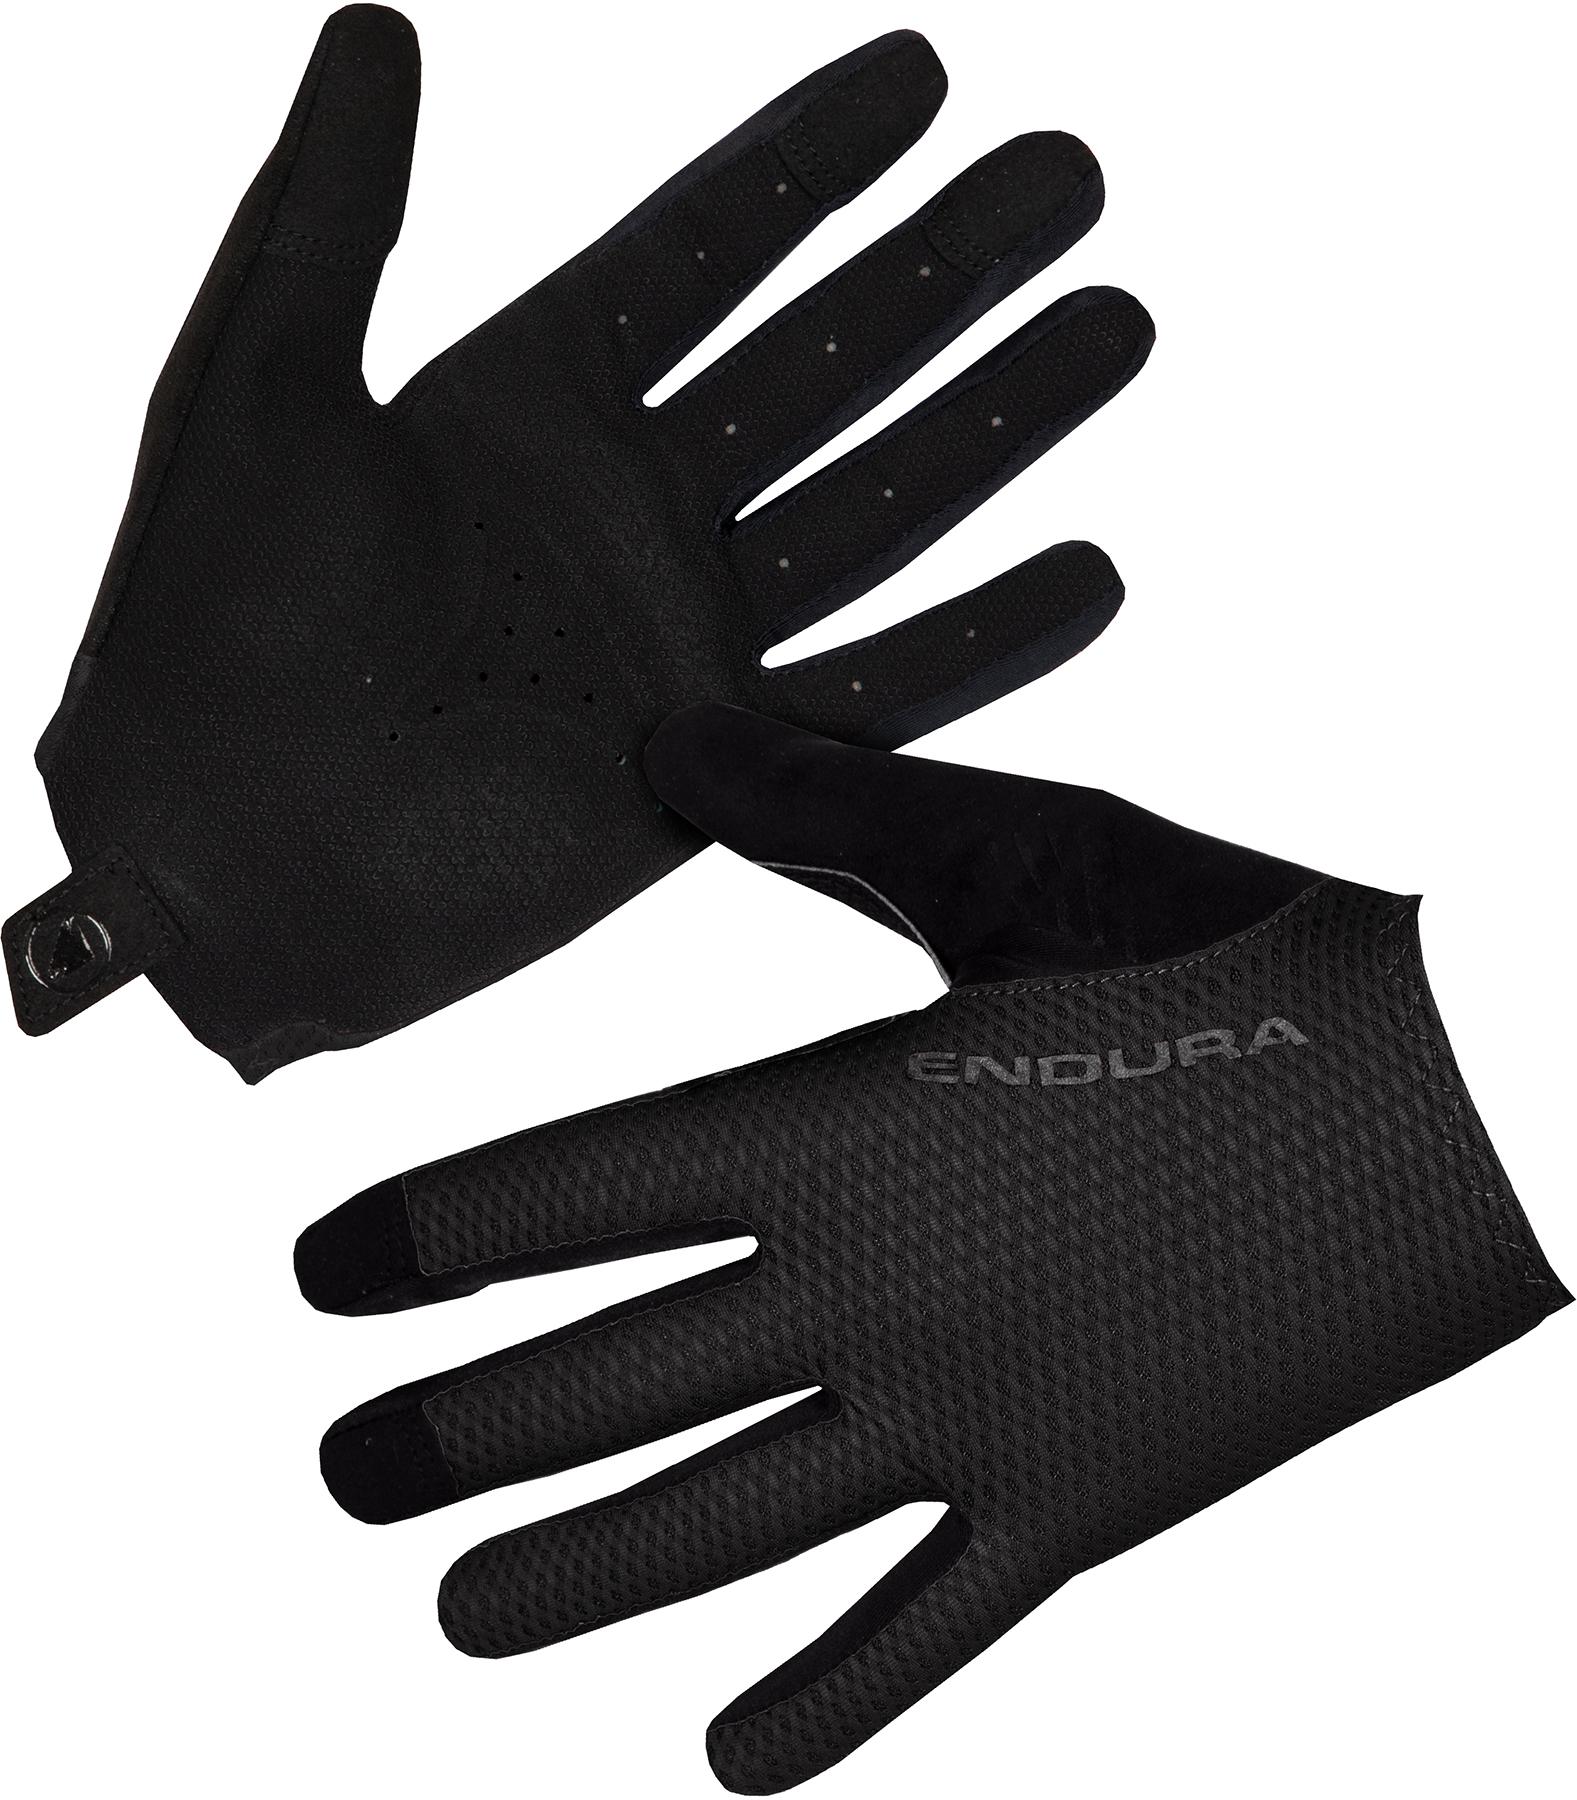 Endura Egm Full Finger Glove - Black